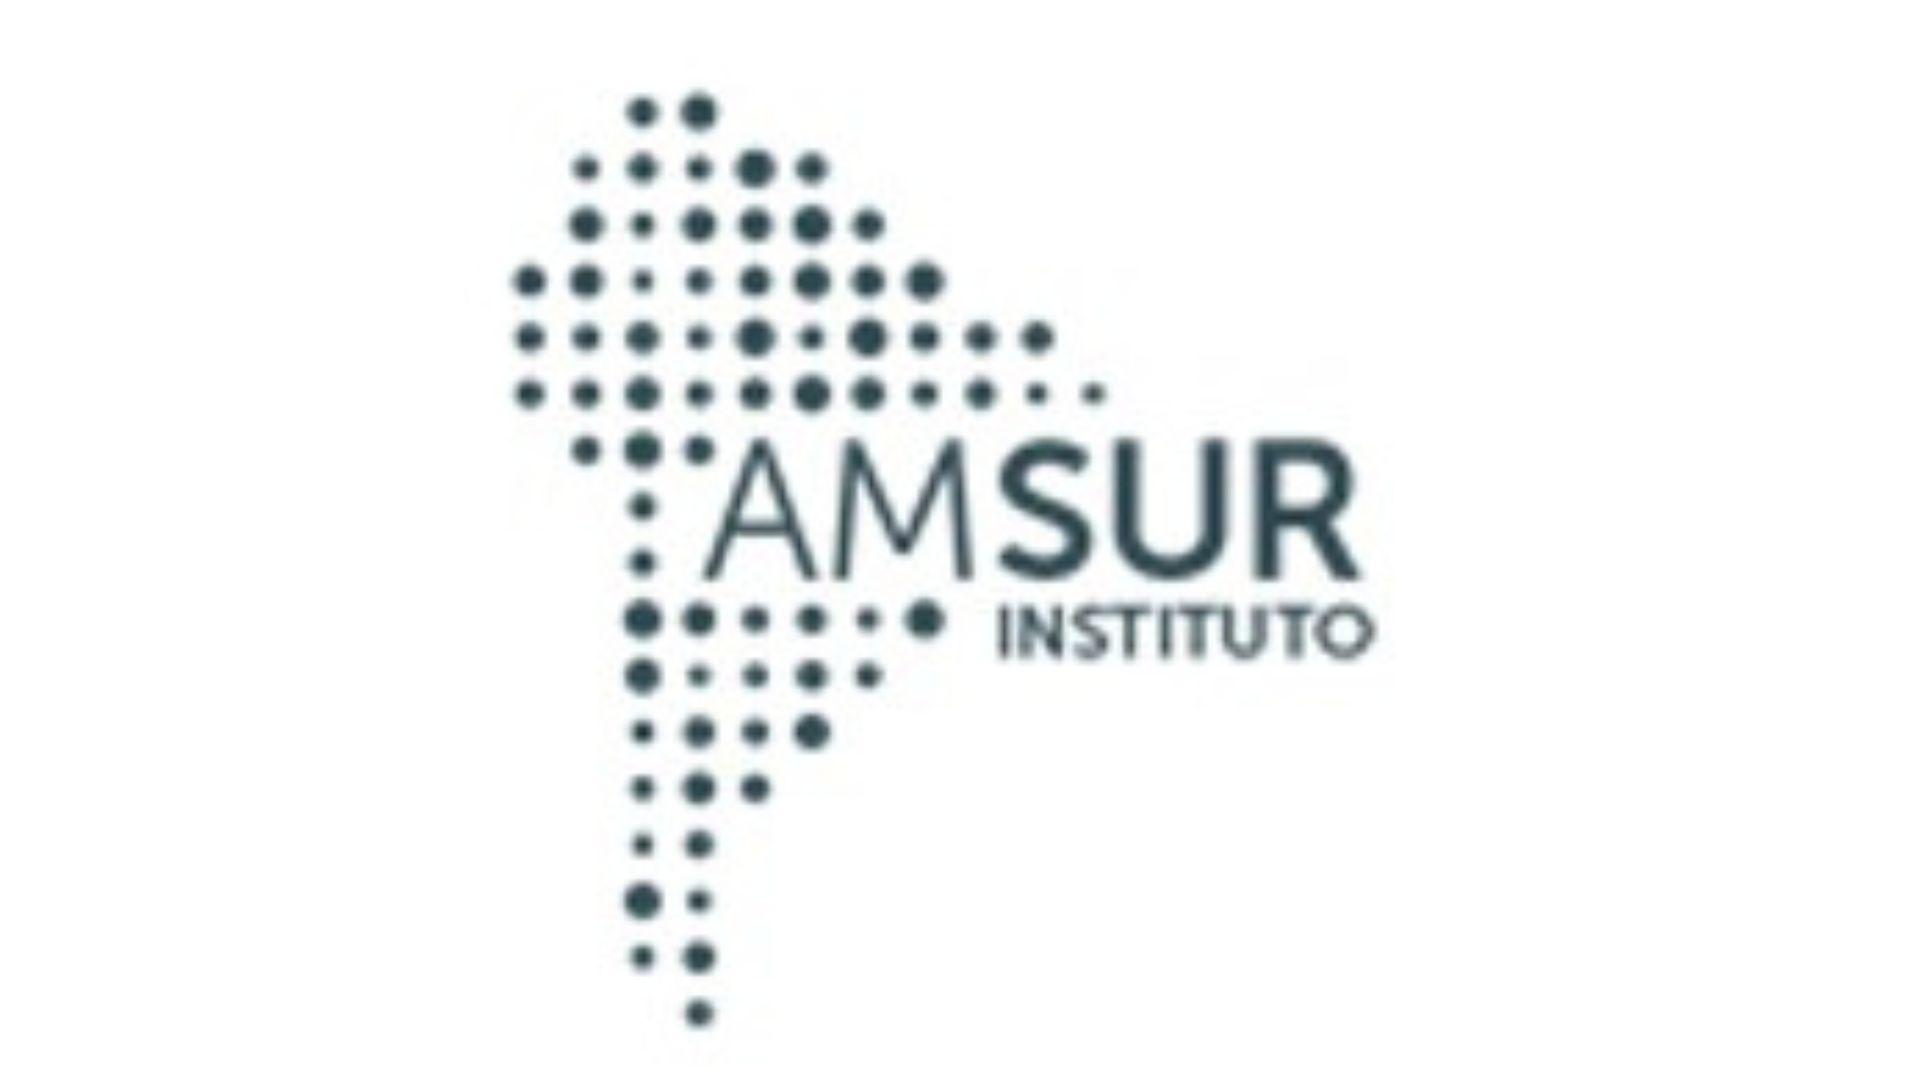 Instituto Amsur